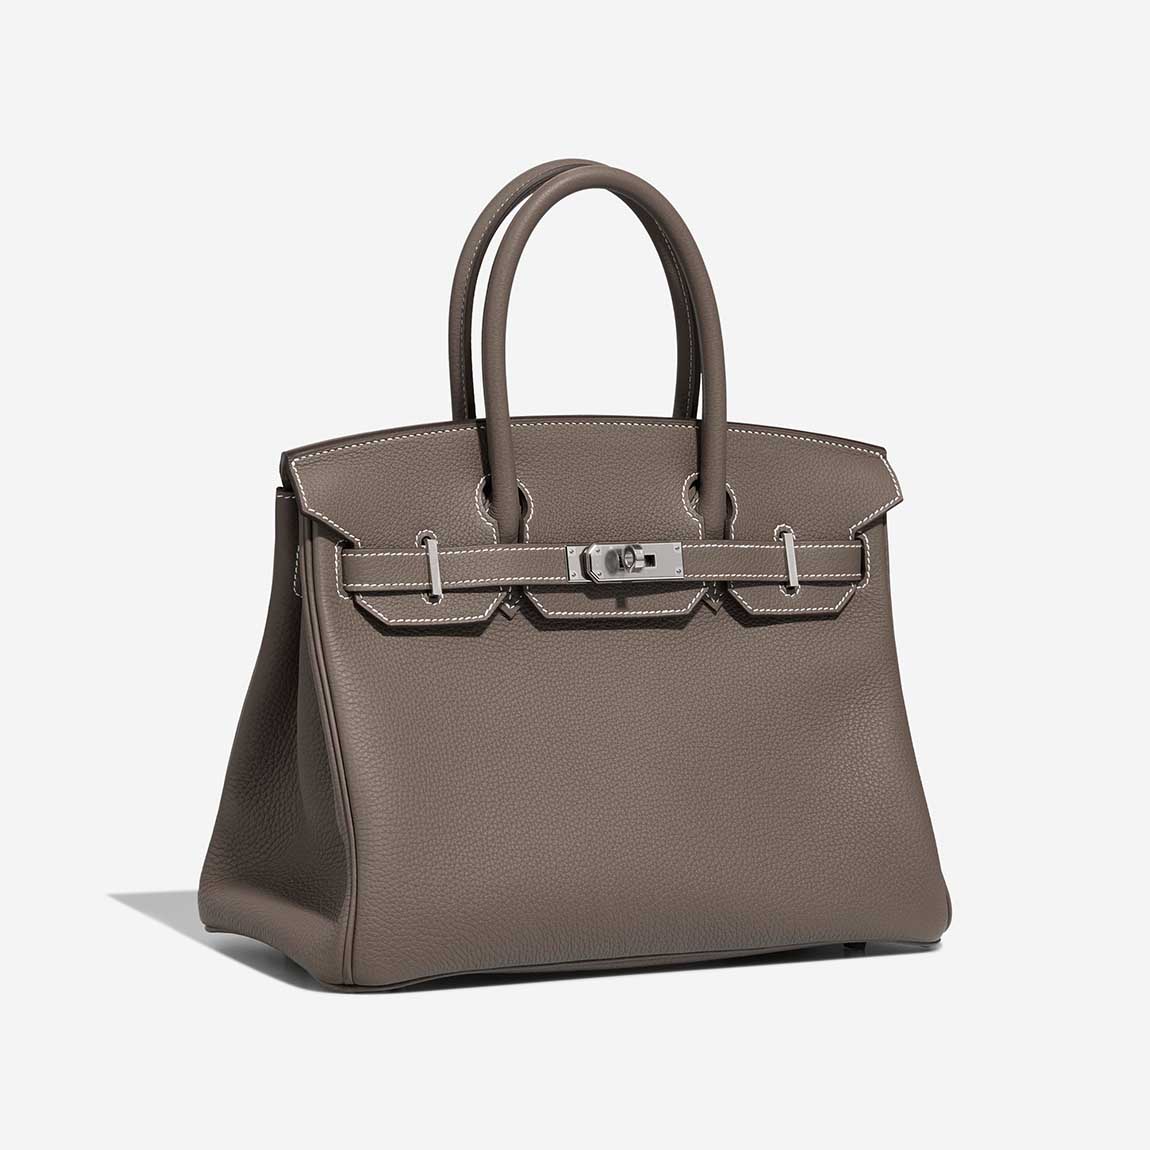 Hermès Birkin 30 Togo Étoupe | Sell your designer bag